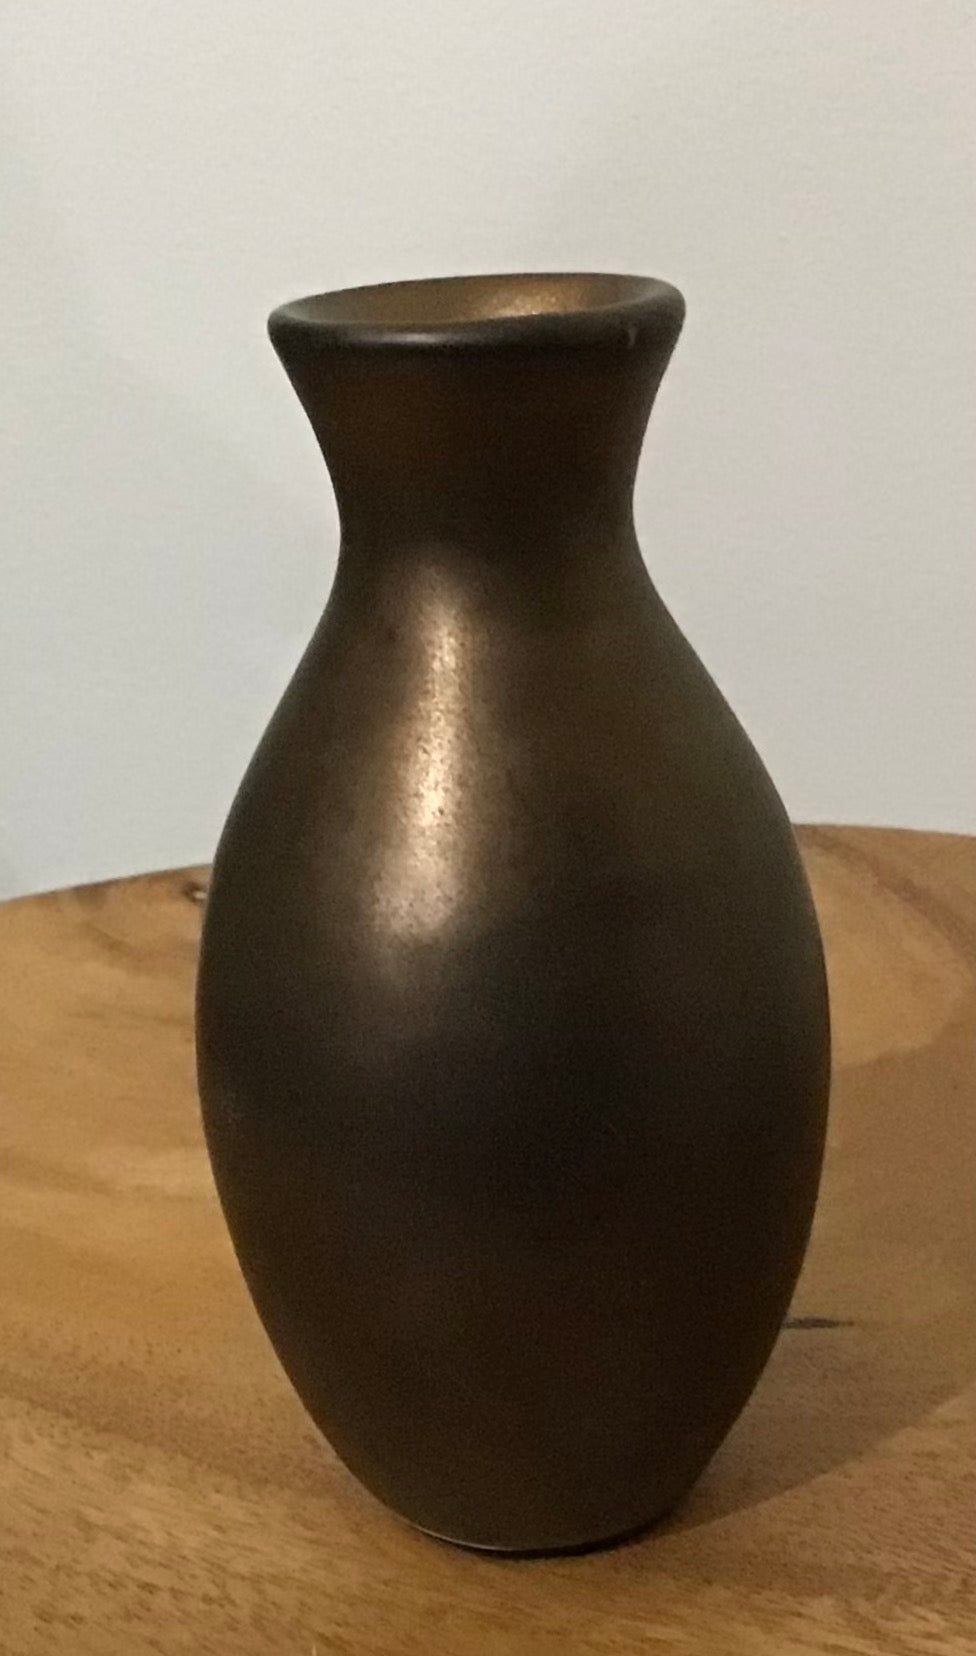  Bronze-ceramic-vase-by-Have-You-Met-Miss-Jones